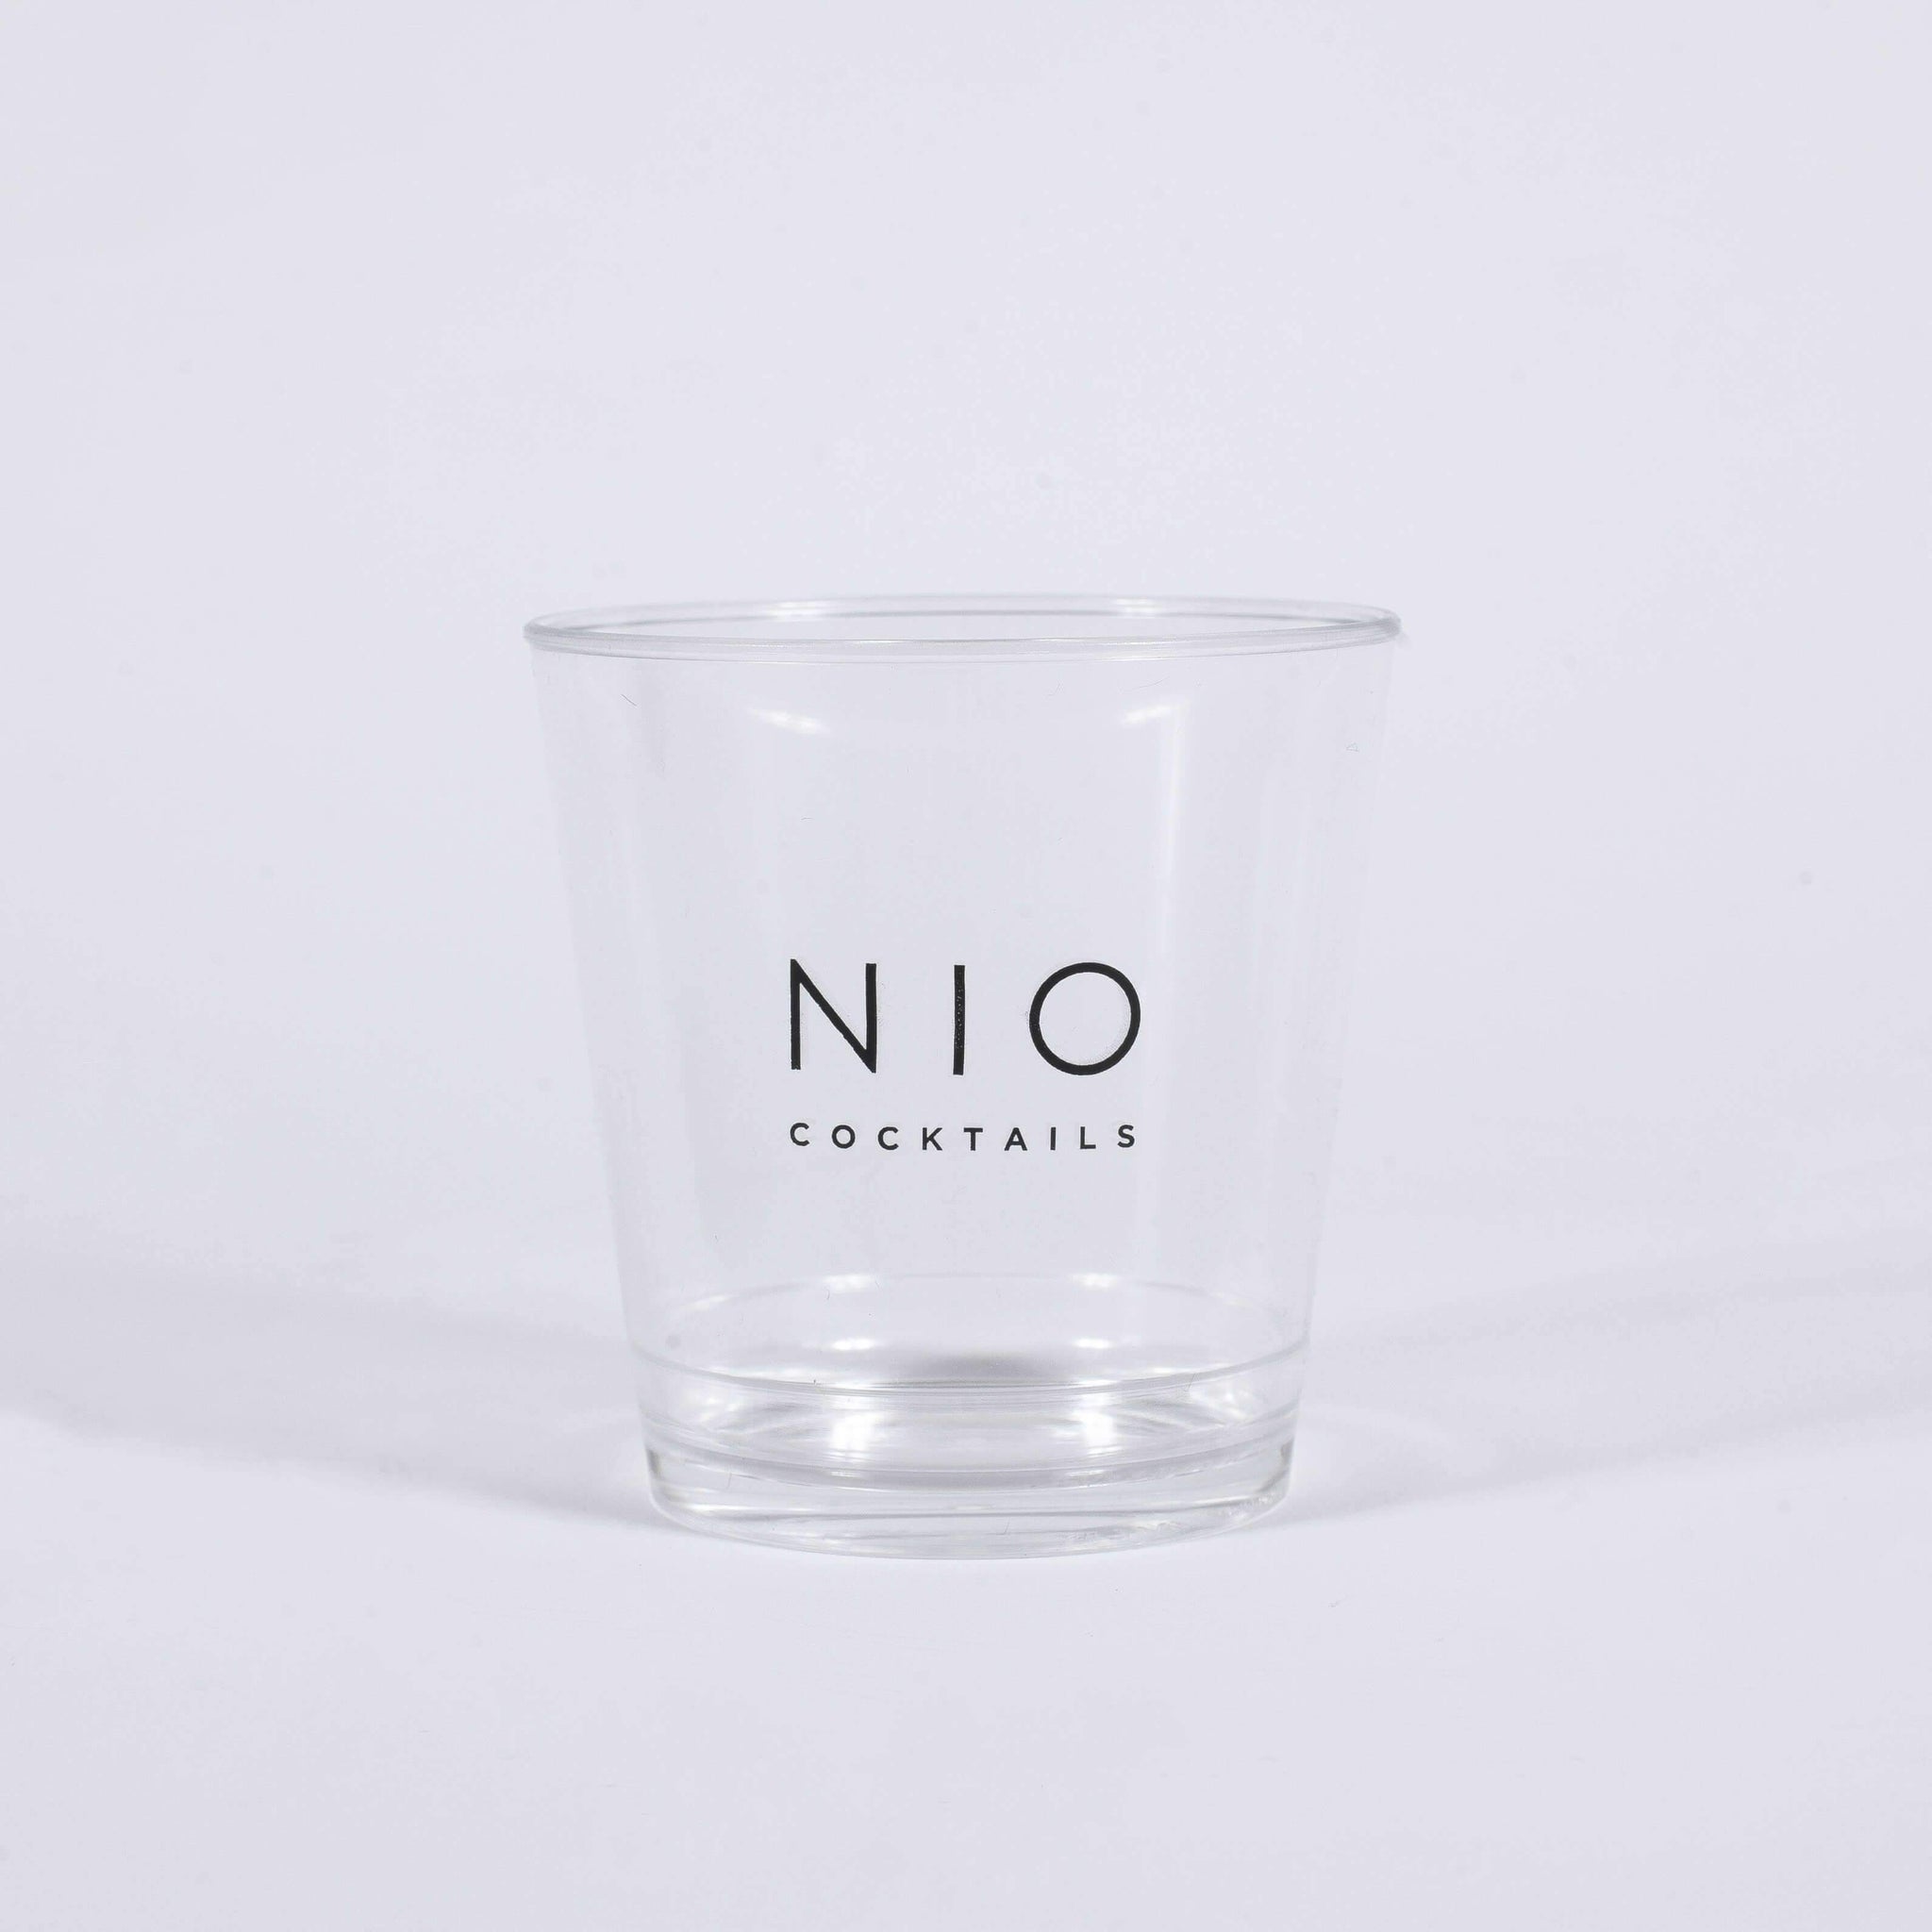 Verre à cocktails avec logo NIO Coctails